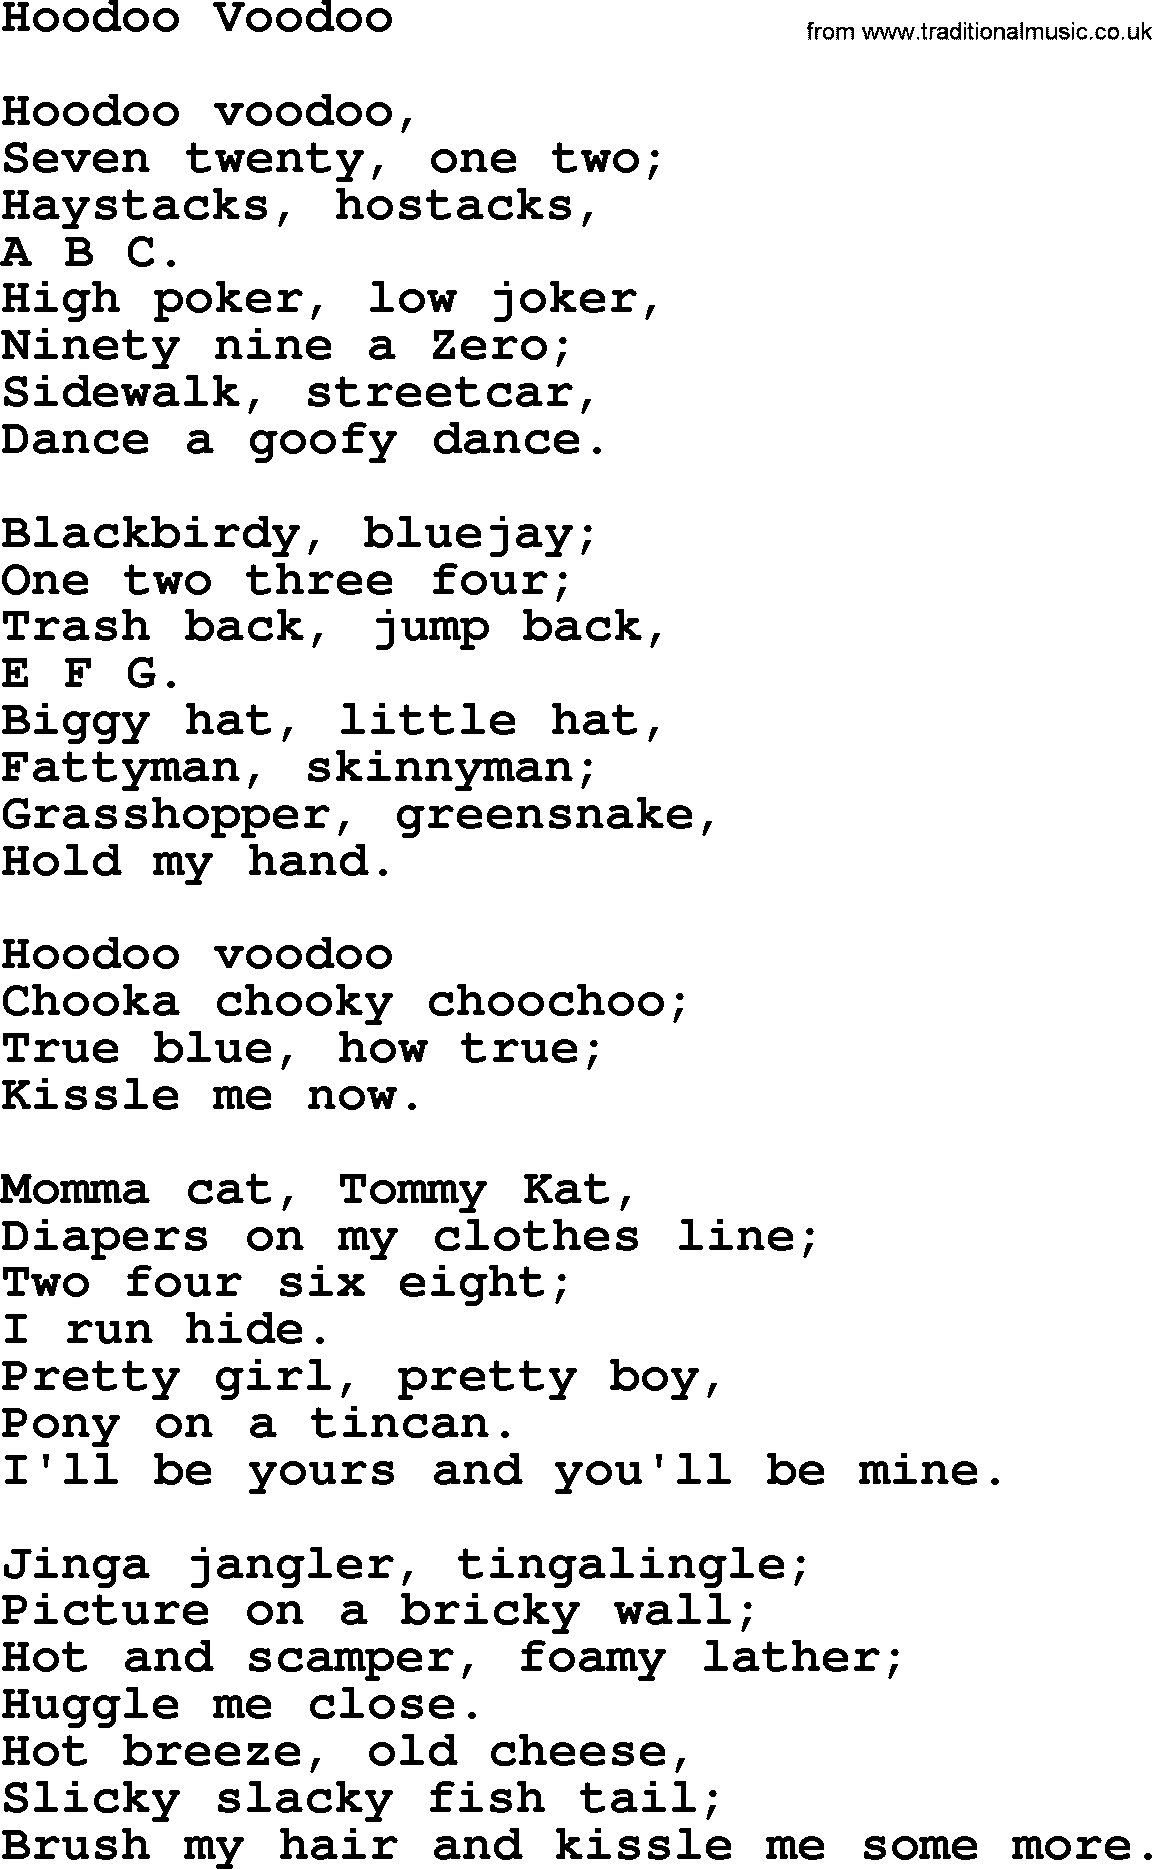 Woody Guthrie song Hoodoo Voodoo lyrics